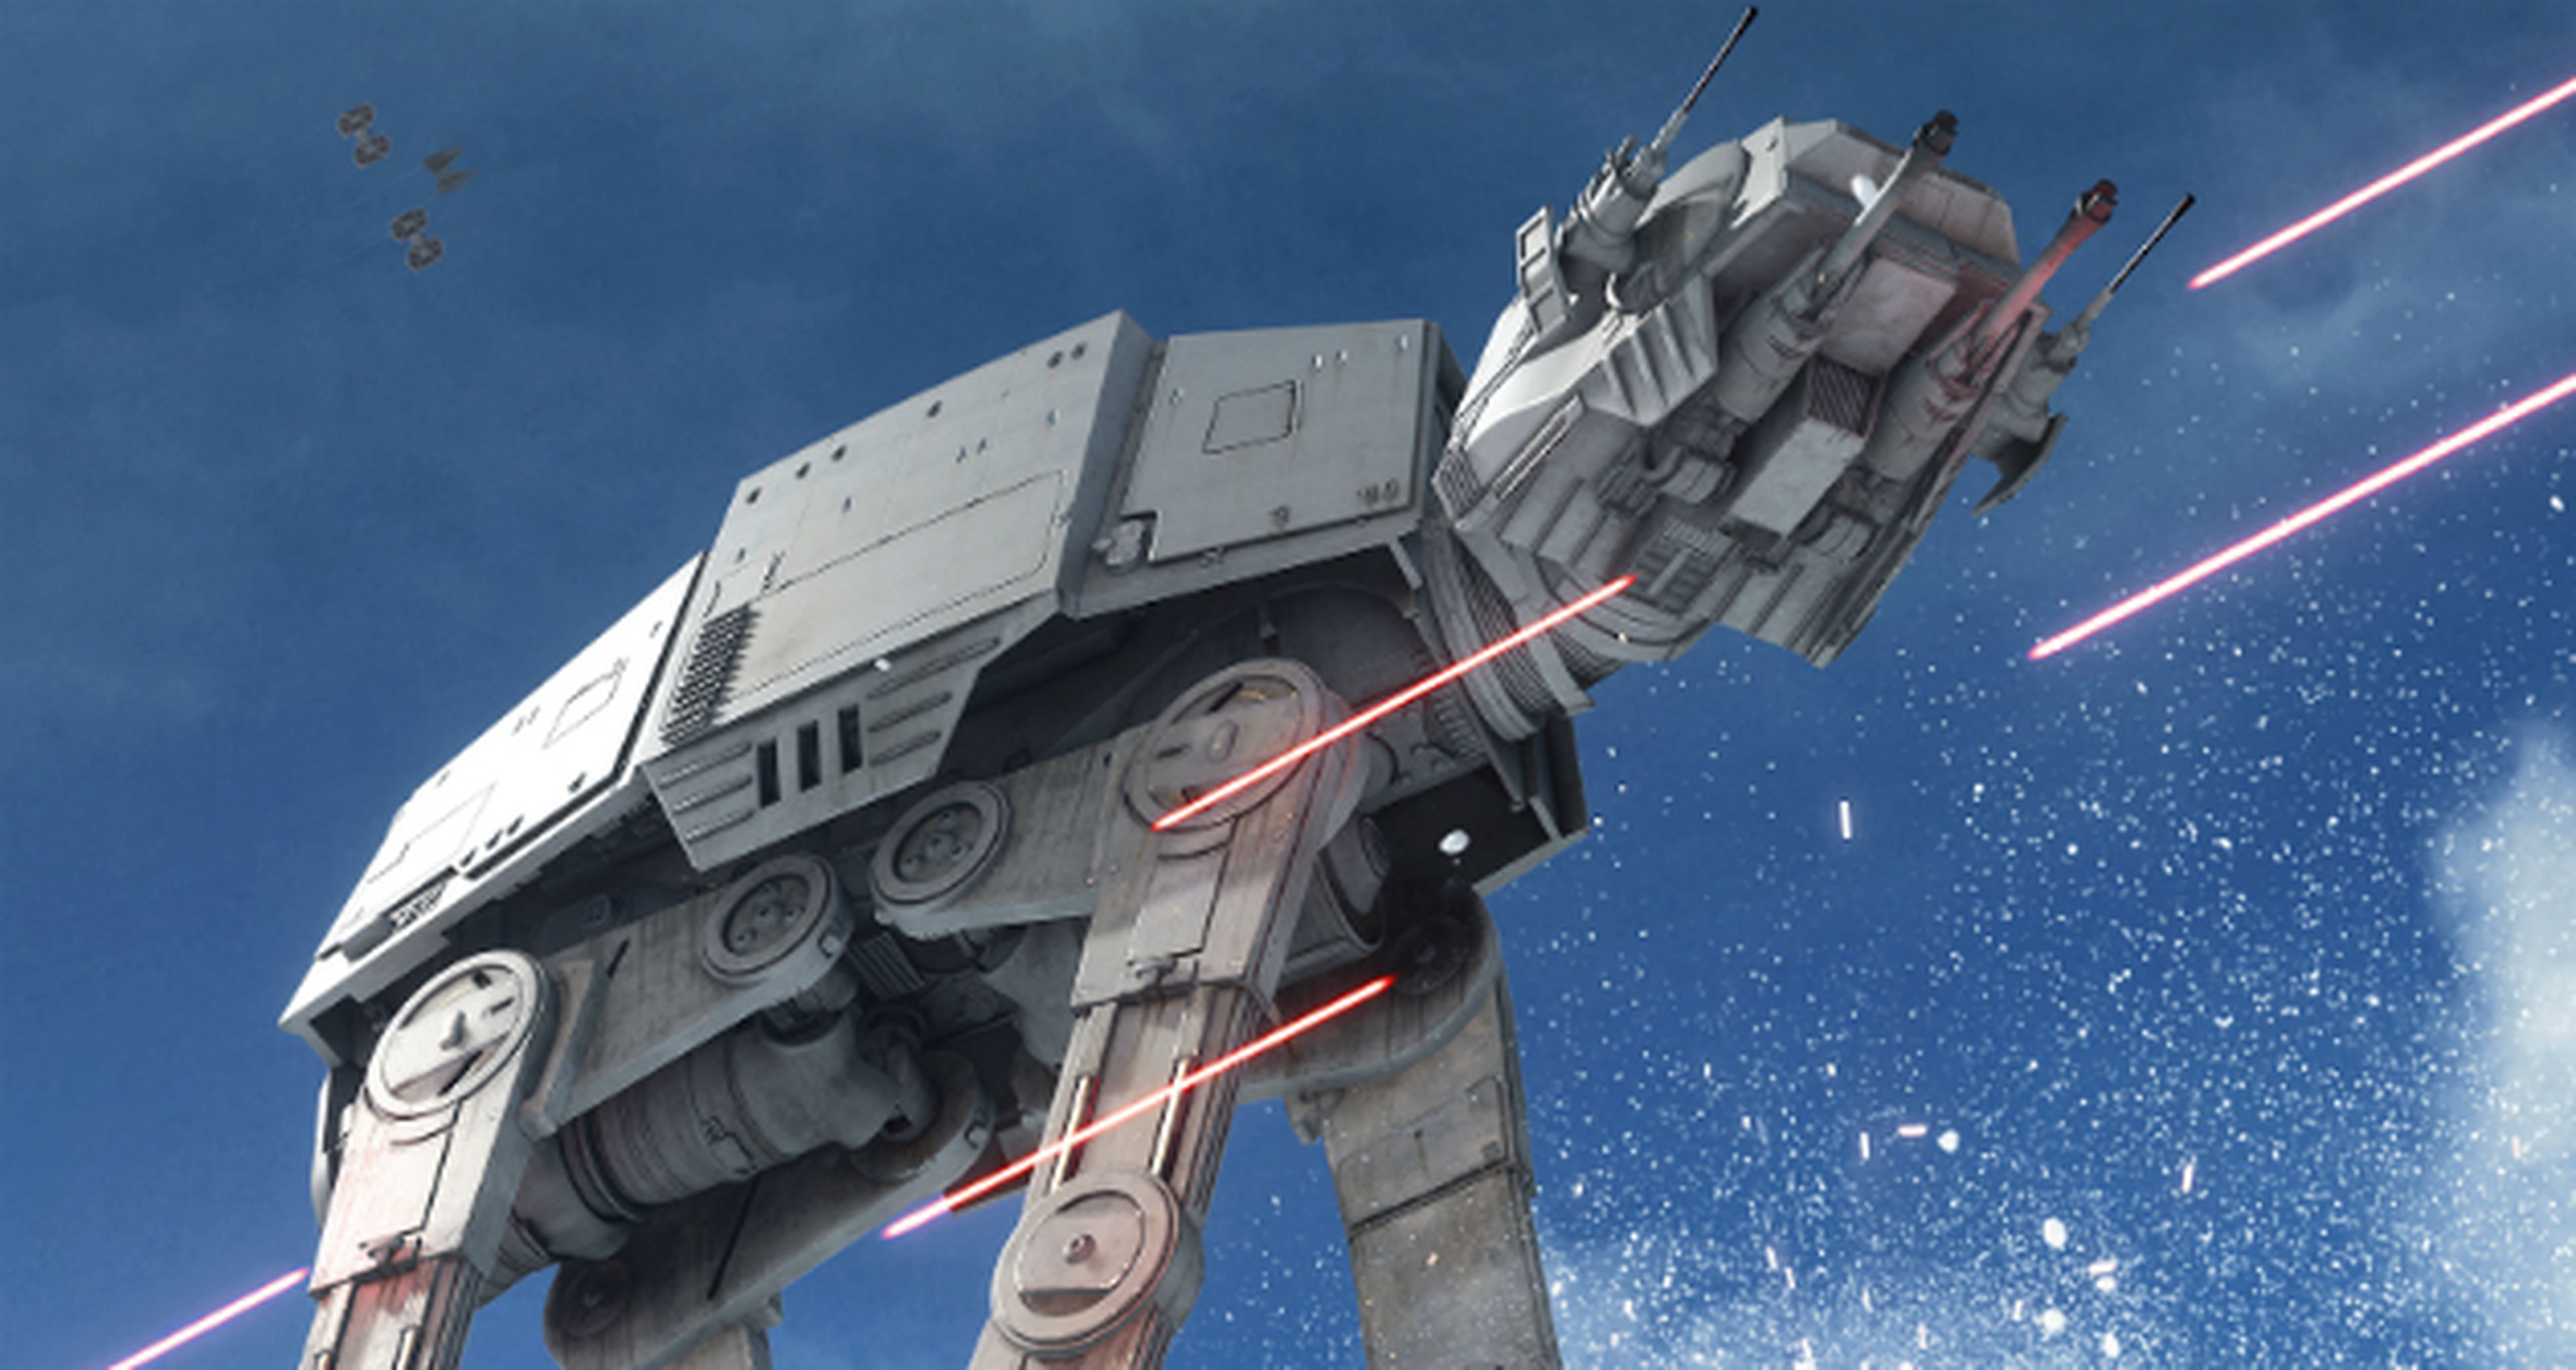 Star Wars Battlefront ha vendido 12 millones de unidades según analistas